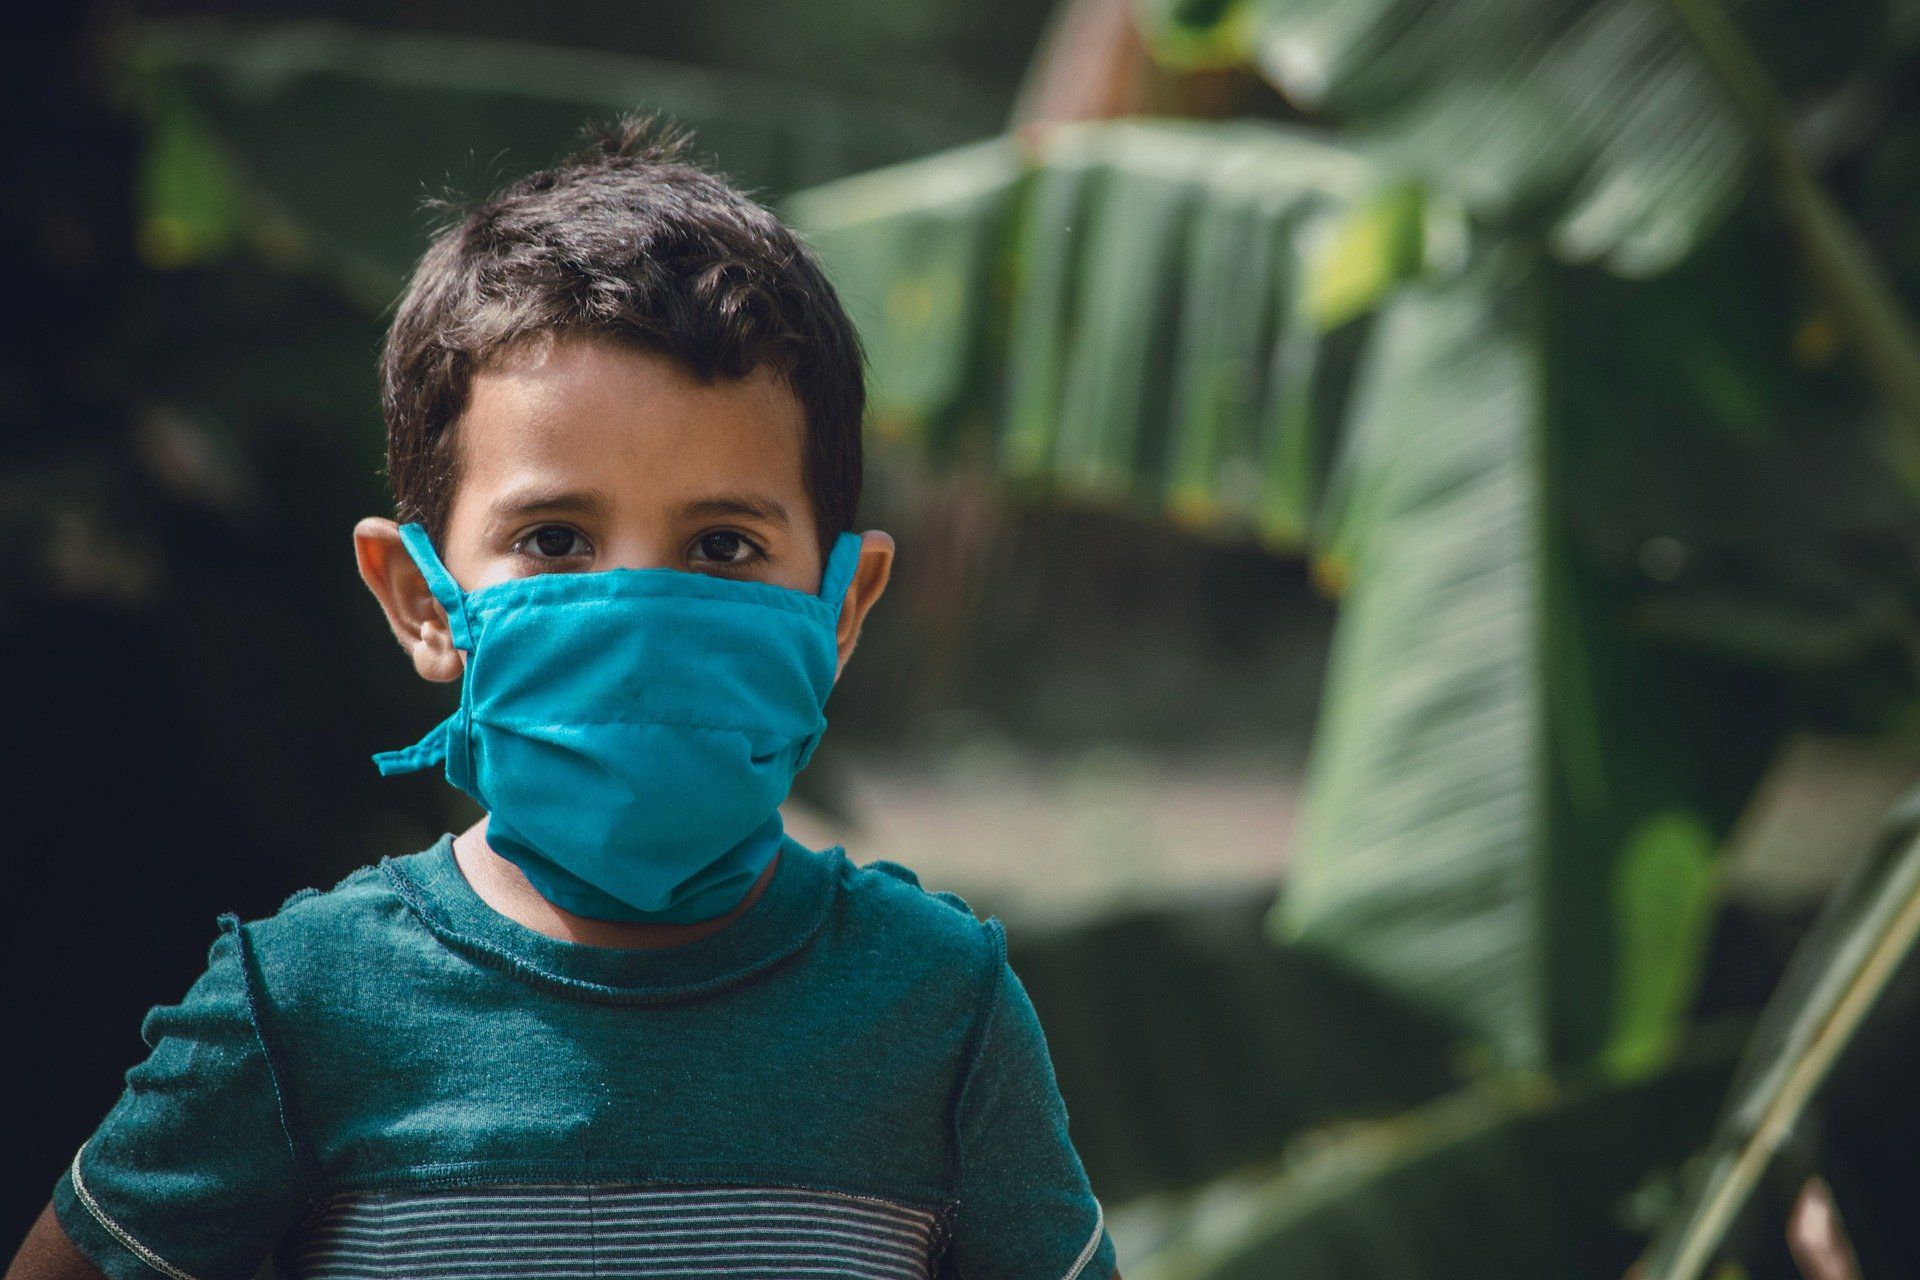 Un niño menor de edad con una mascarilla ante la pandemia del coronavirus  / Foto: Manuel Darío Fuentes Hernández - Pixabay